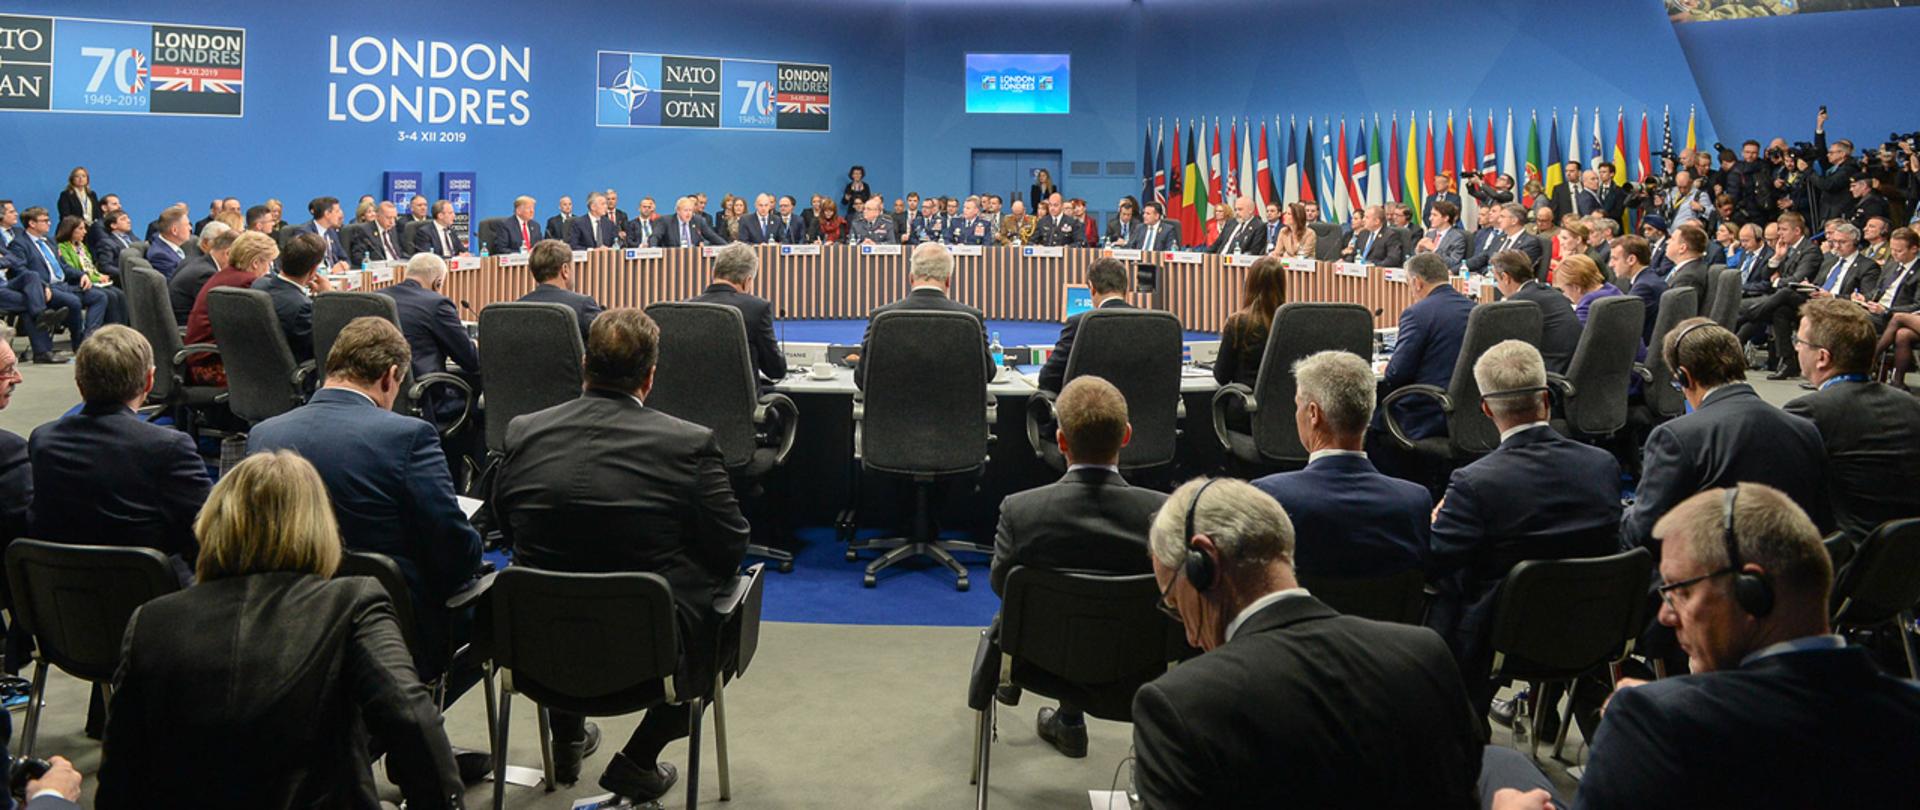 Sesja Rady Północnoatlantyckiej z udziałem prezydentów i szefów rządów w Londynie. 